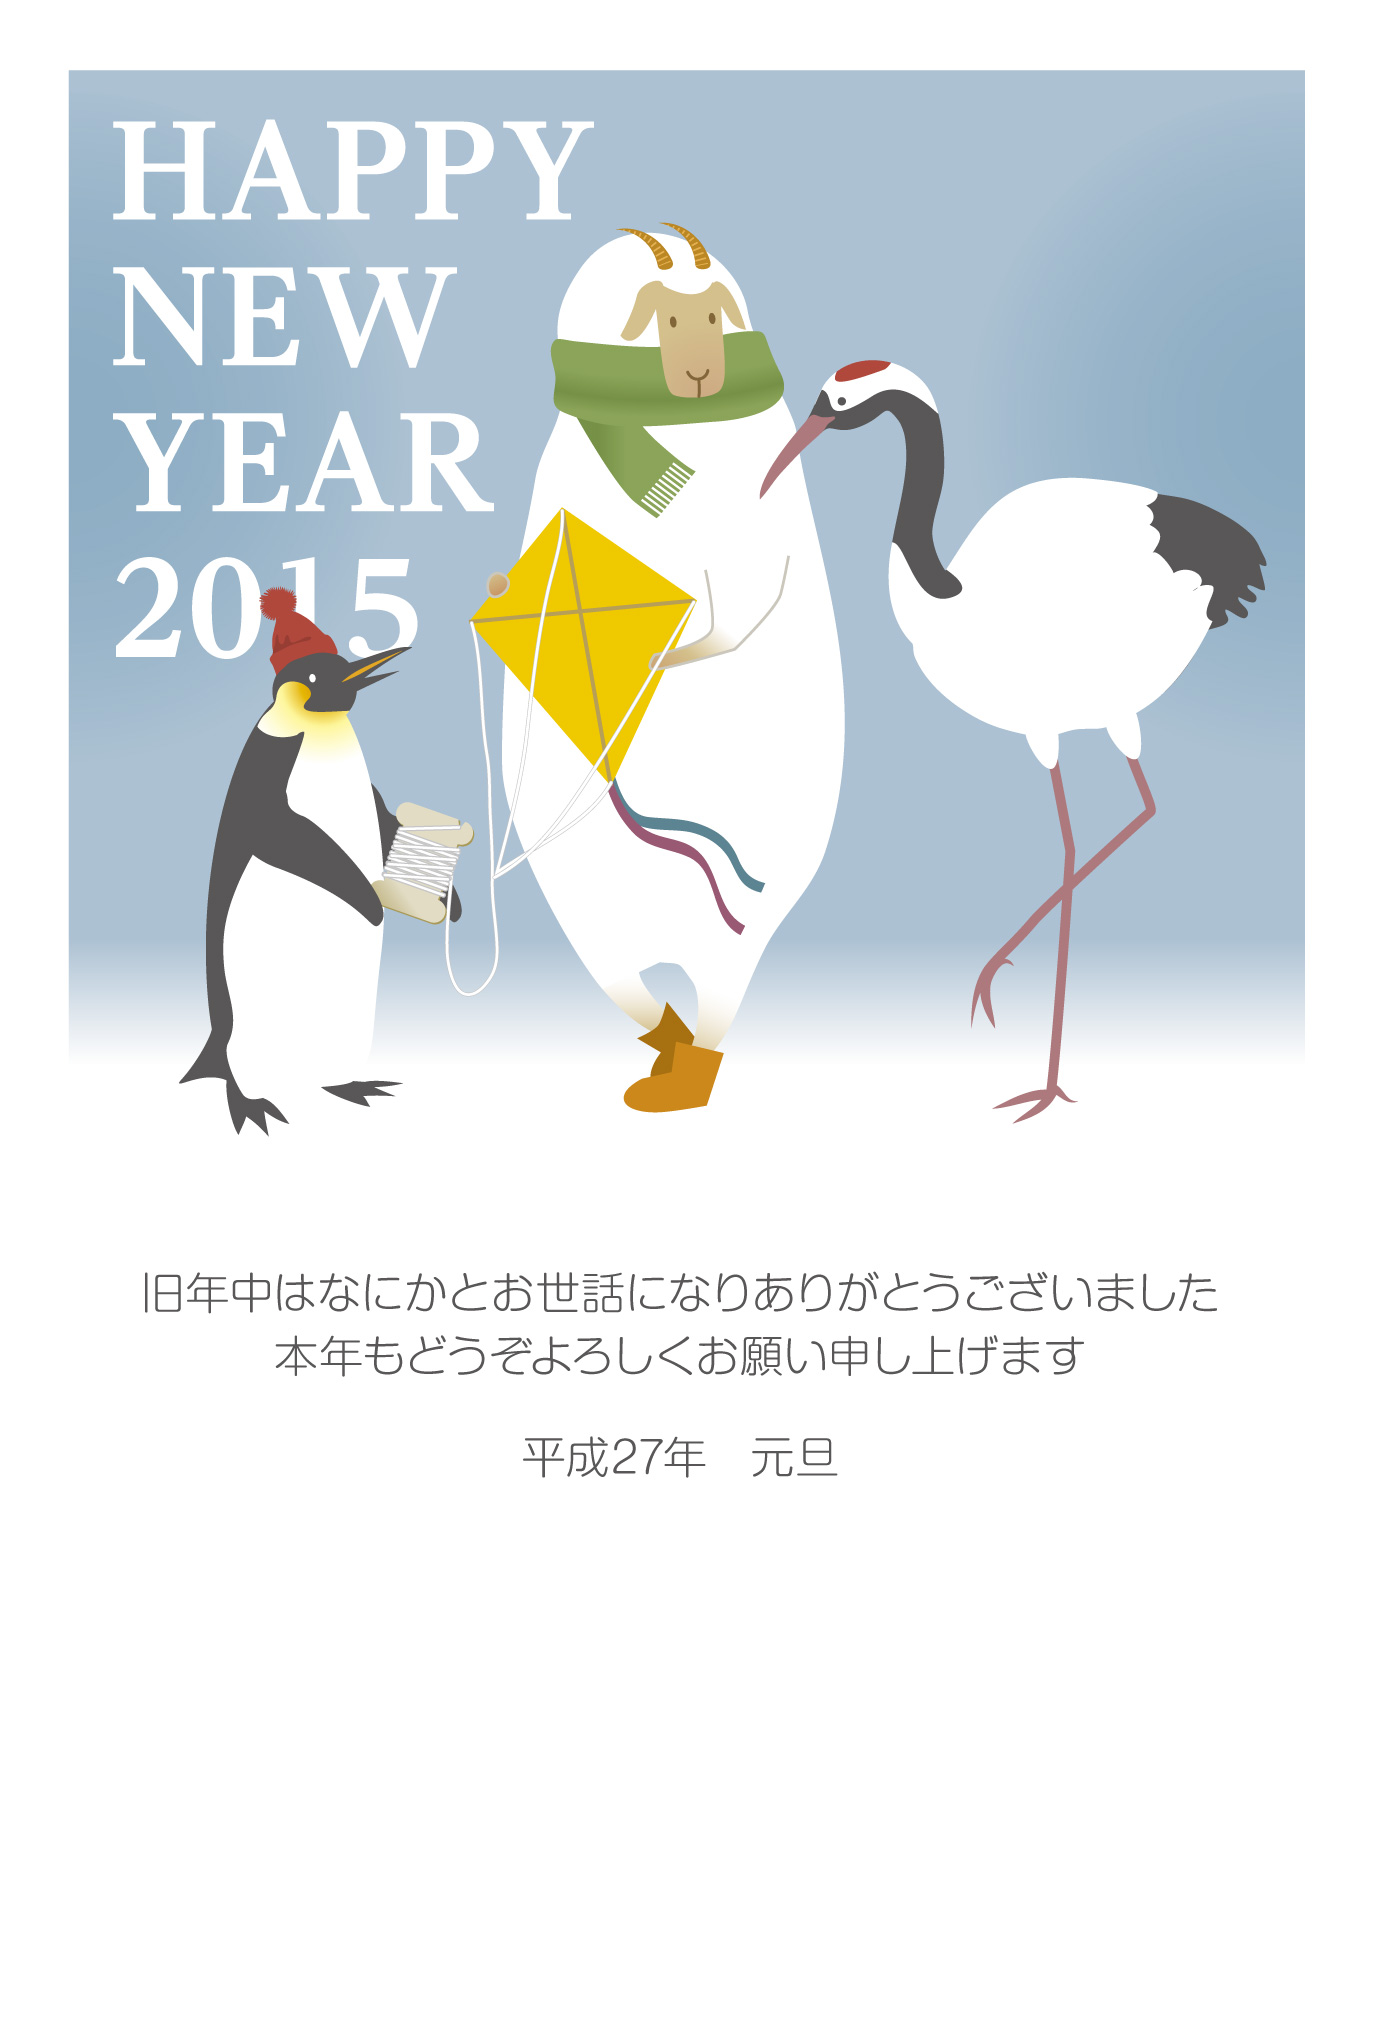 15年 ひつじとペンギンとツルのかわいい凧揚げイラスト Ta02